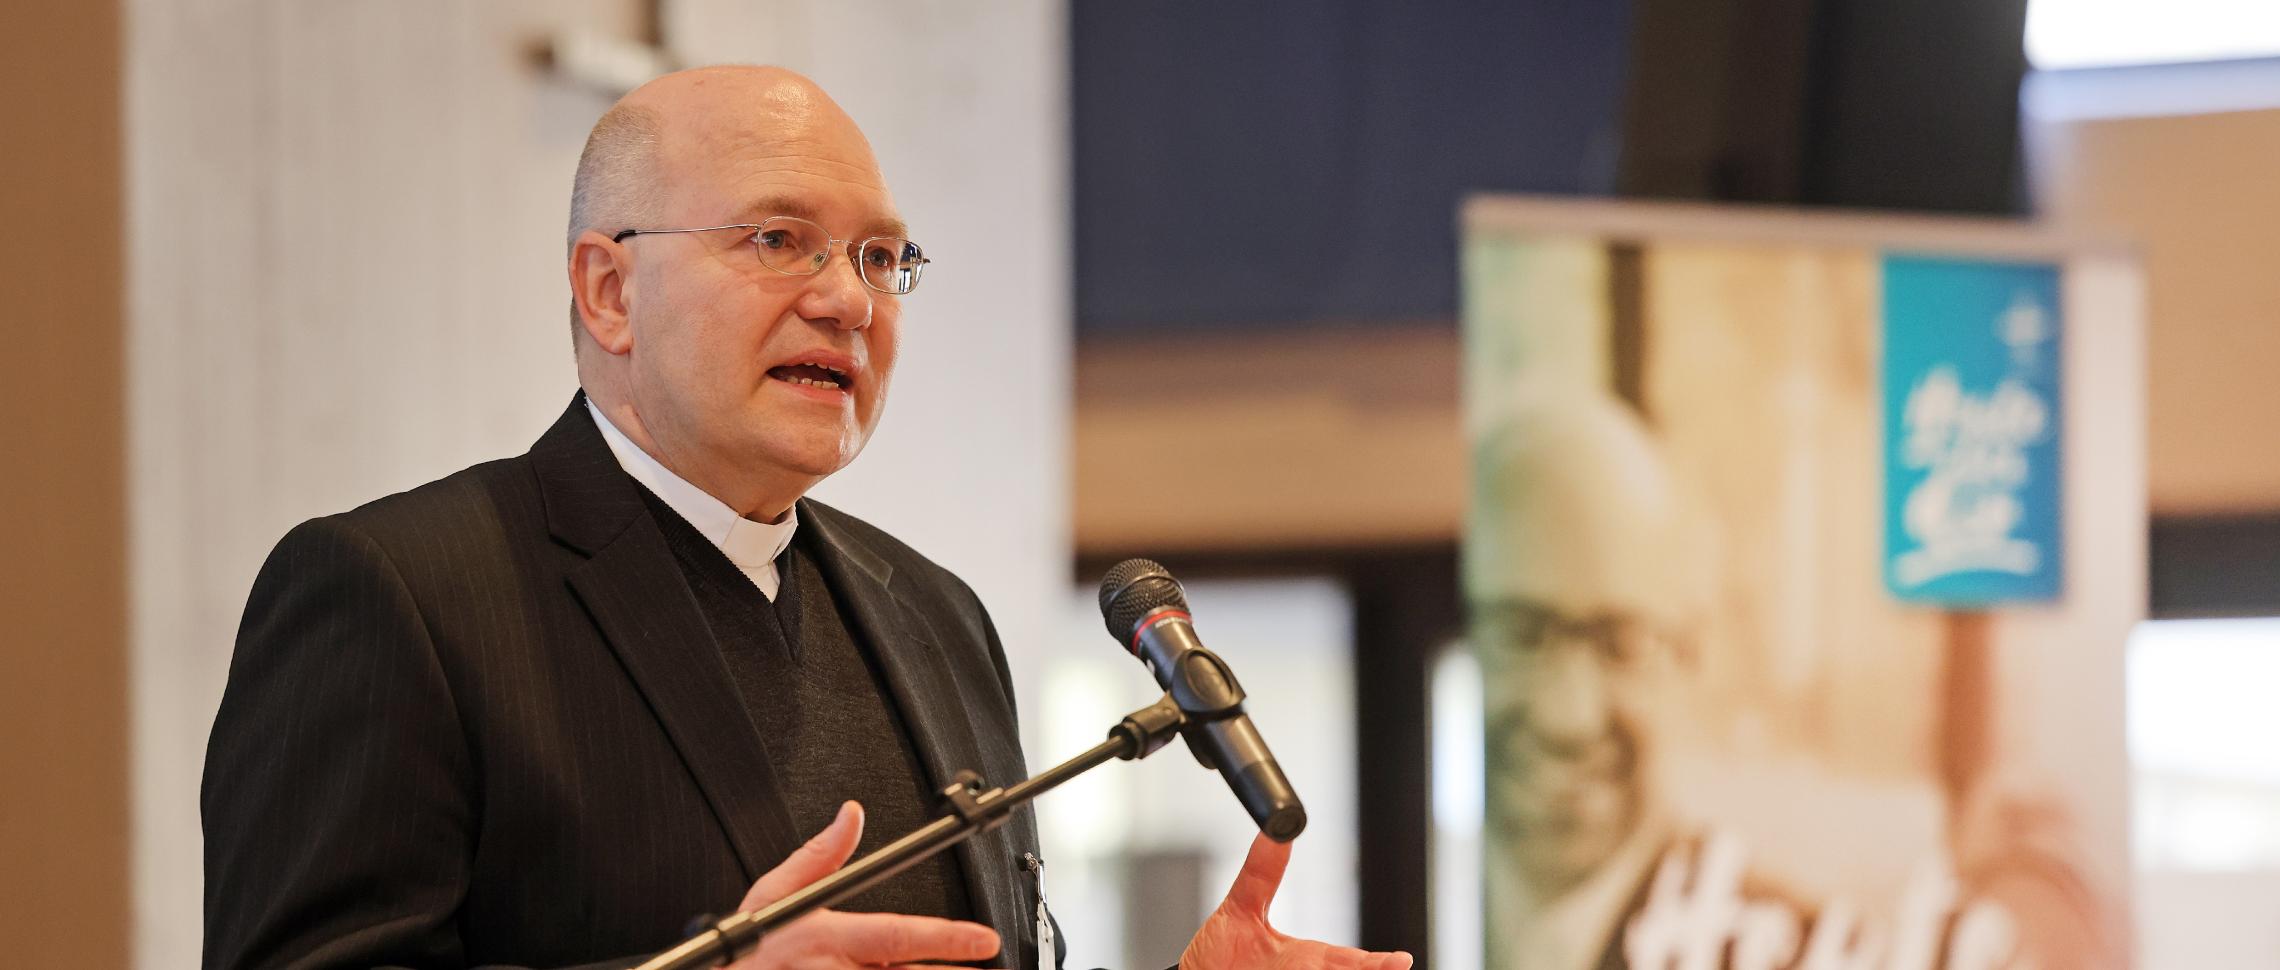 Bischof Dr. Helmut Dieser: 'Gemeinsam gehen'